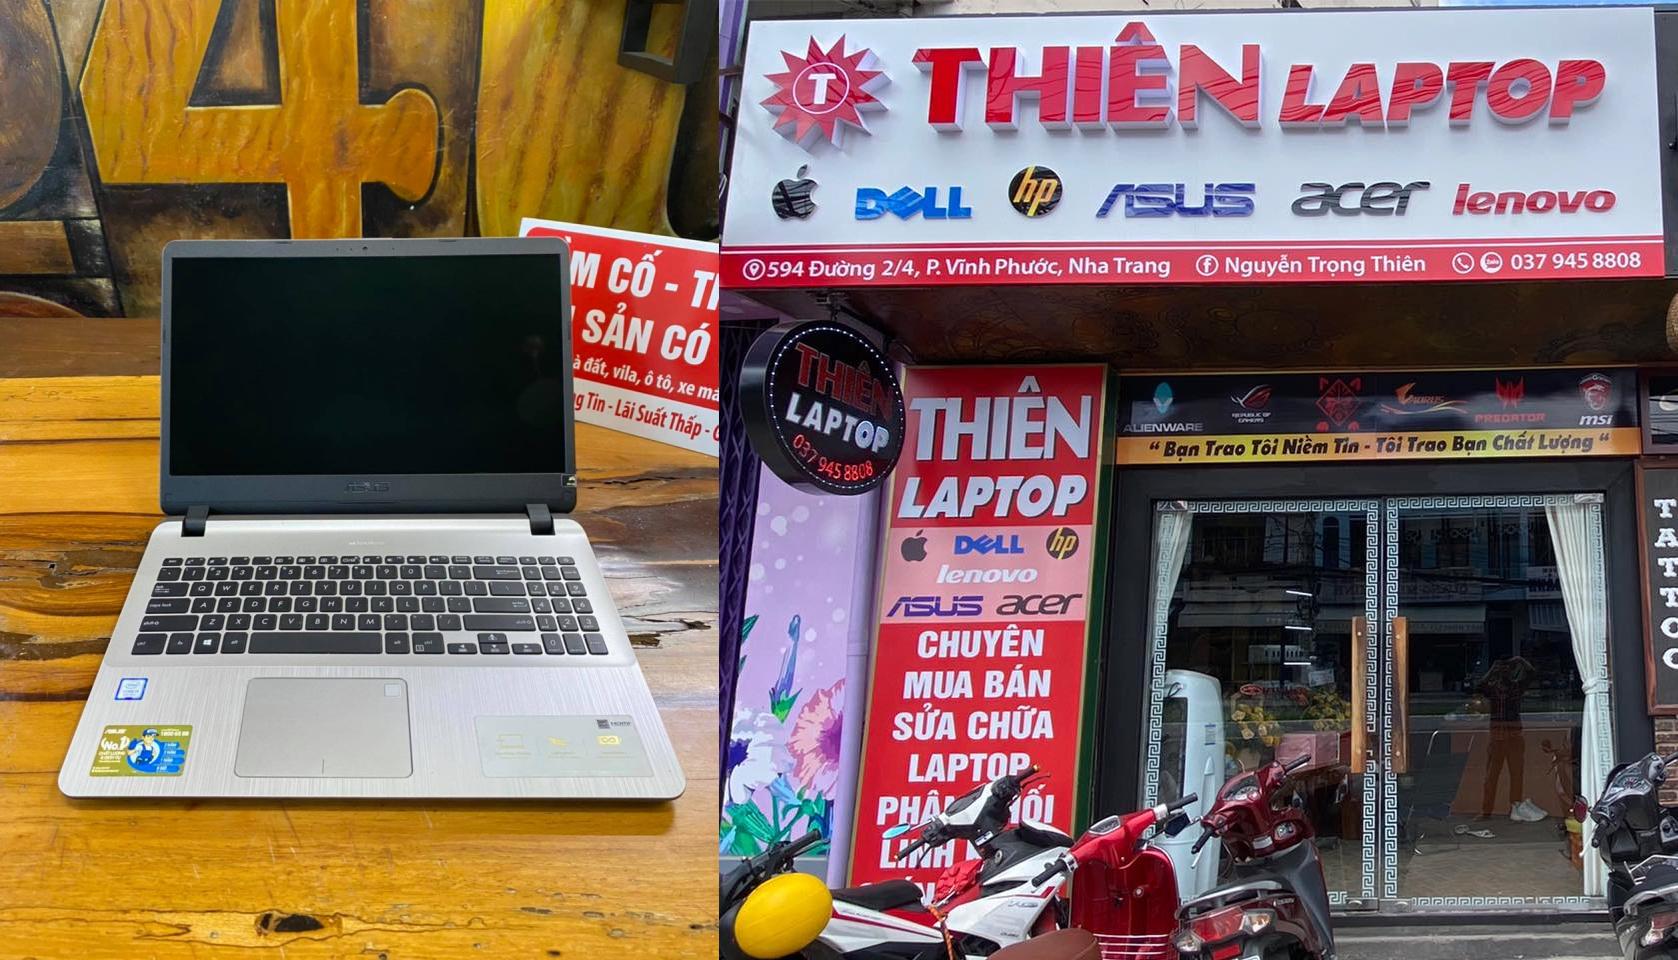 Thiên Laptop - Laptop uy tín Nha Trang